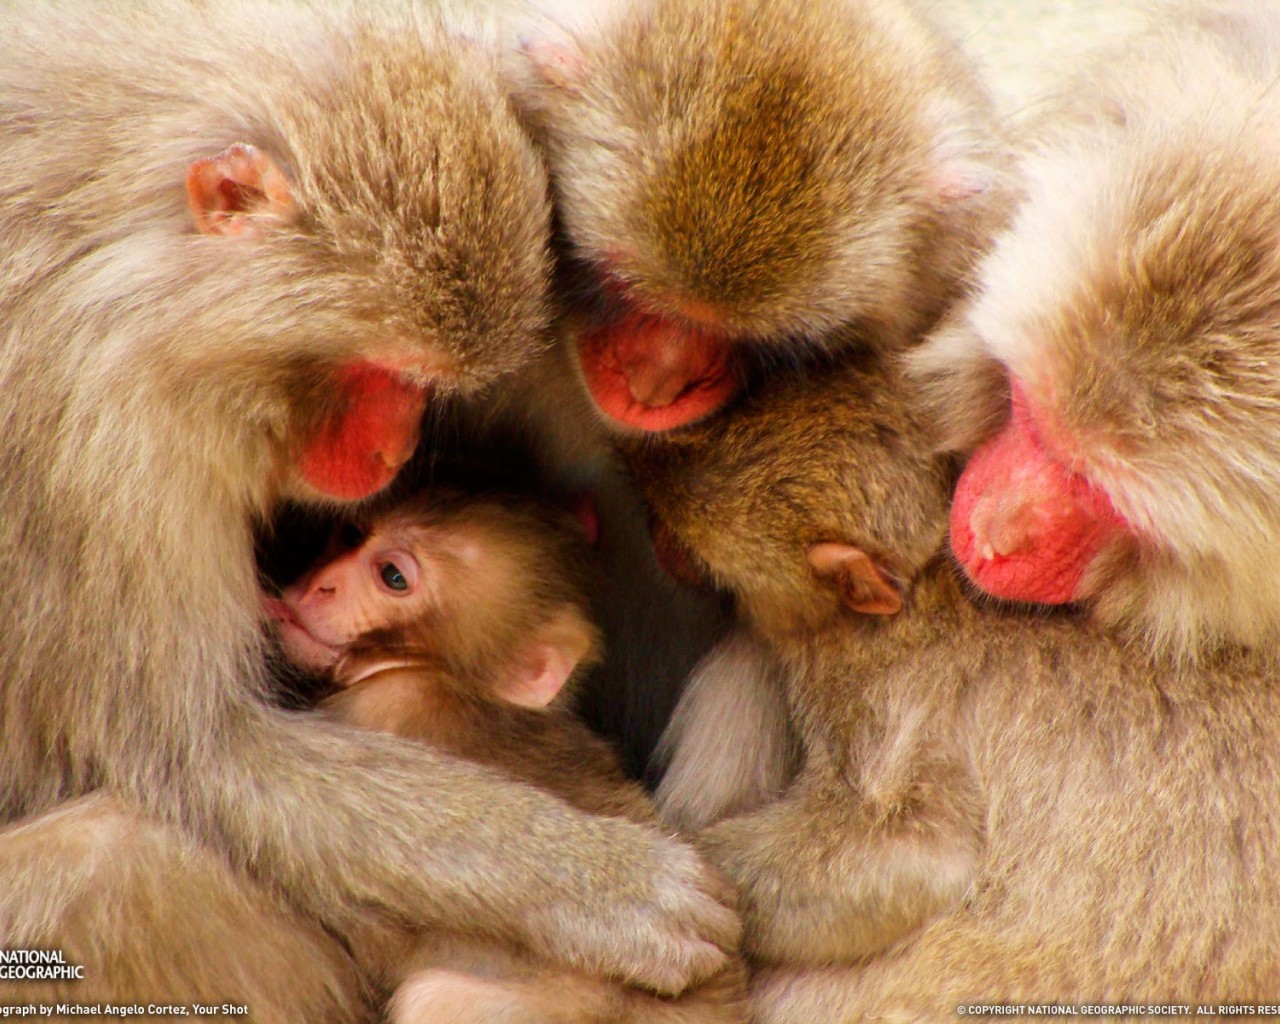 Дружная семья обезьян